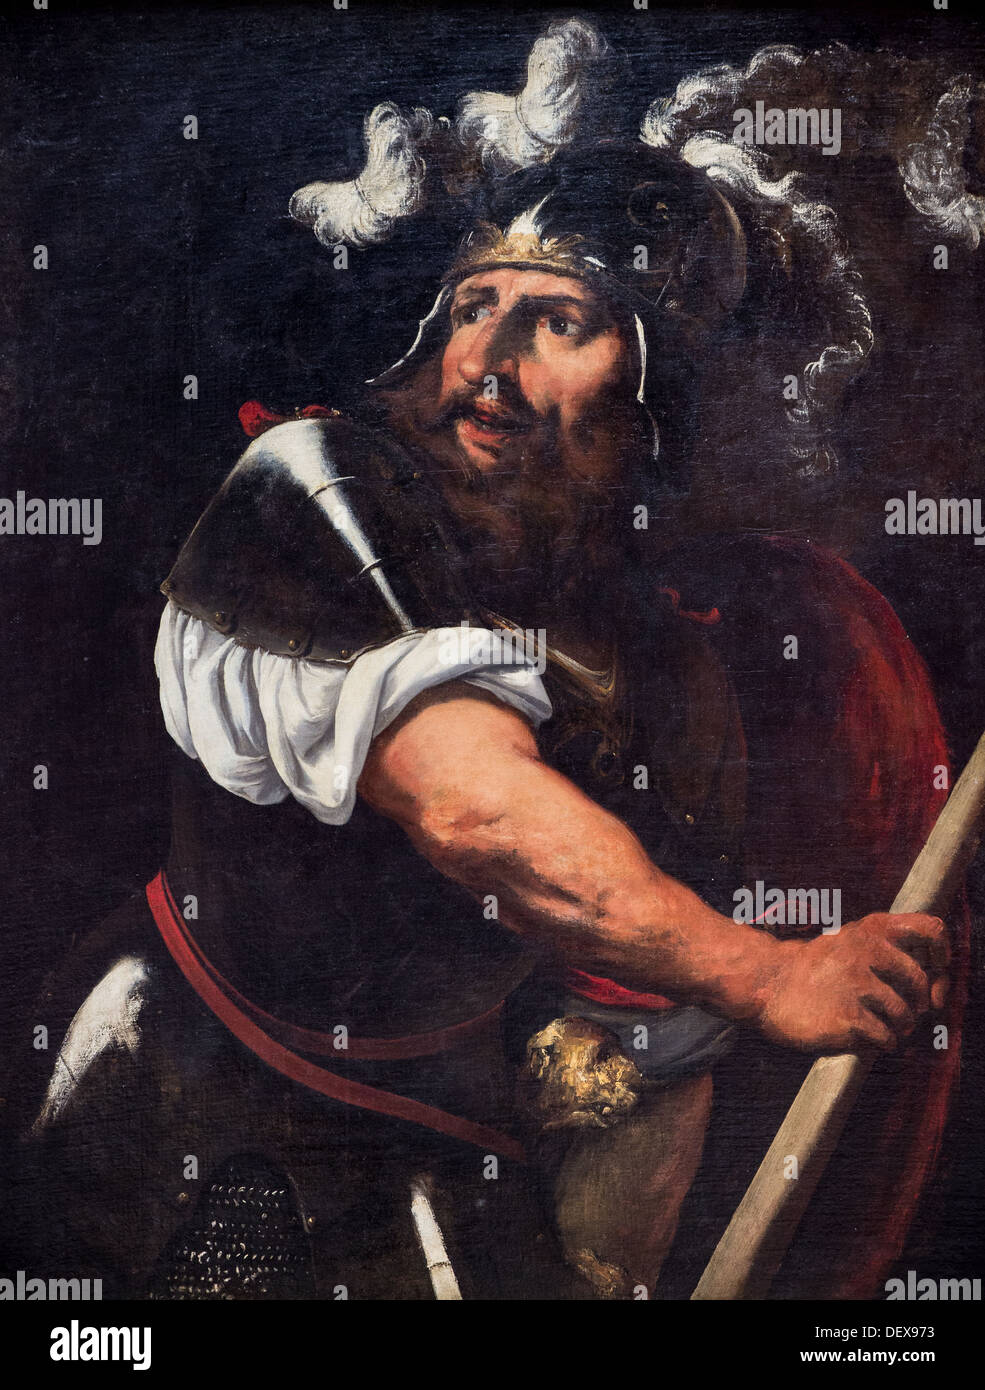 17th century  -  Ajax, around 1650 - Pietro Muttoni known as Pietro della Vecchia oil on canvas Stock Photo